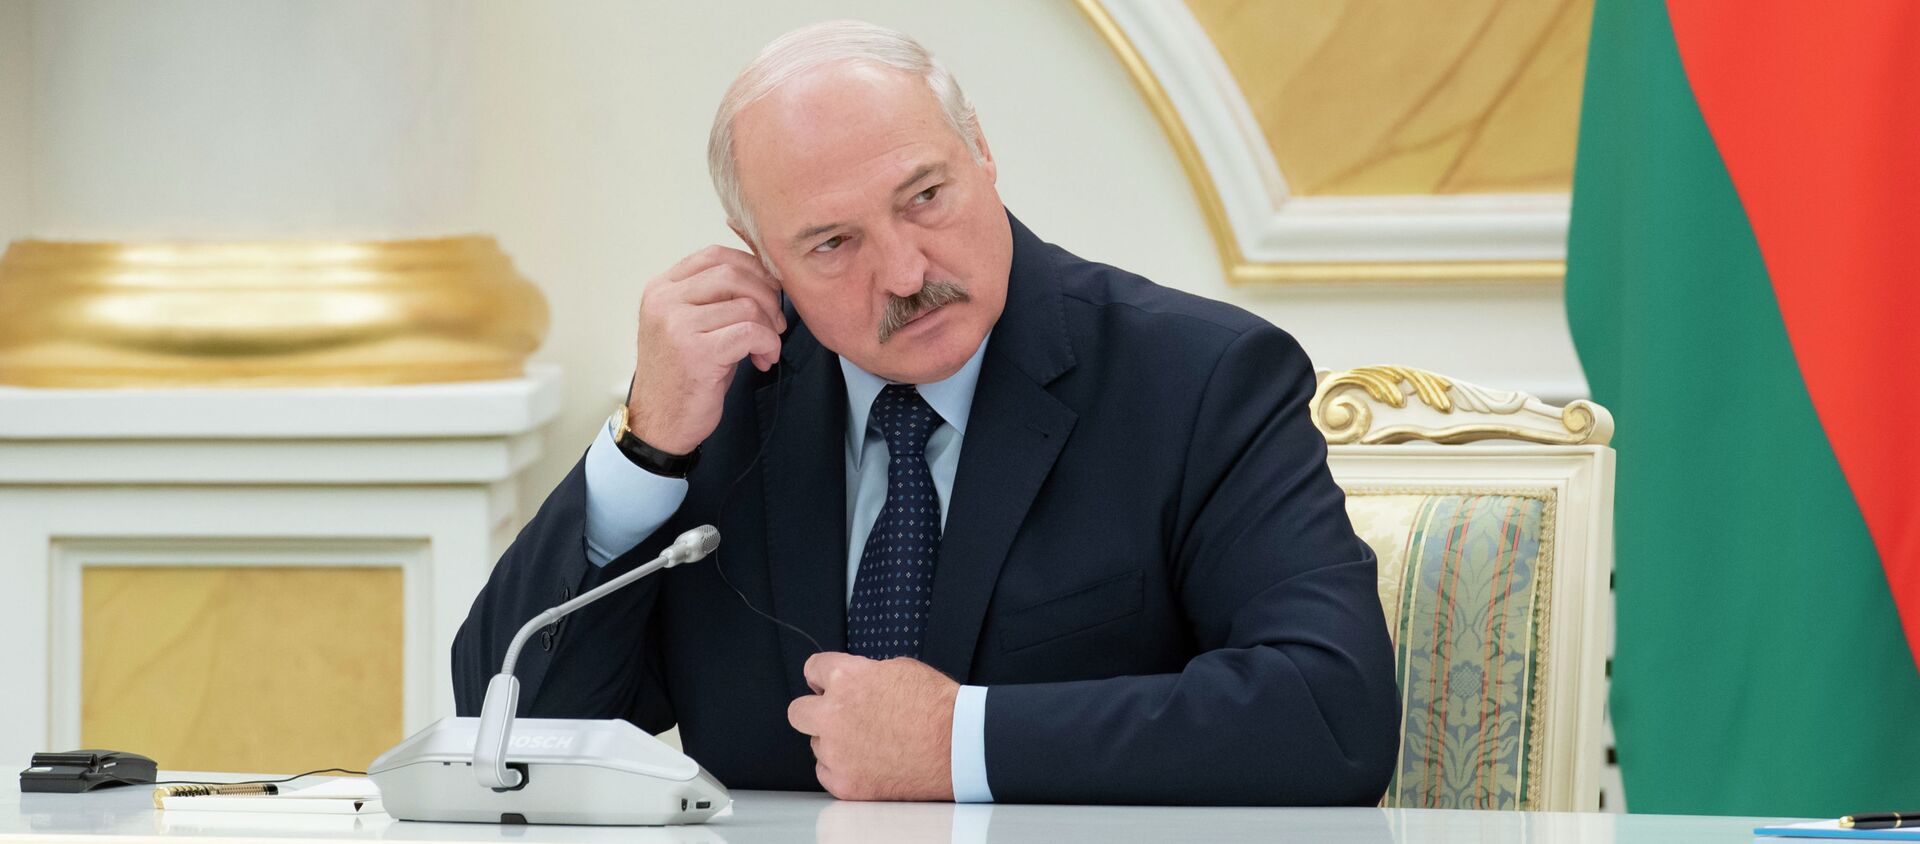 Президент Александр Лукашенко во время визита в Нур-Султан - Sputnik Қазақстан, 1920, 24.08.2020